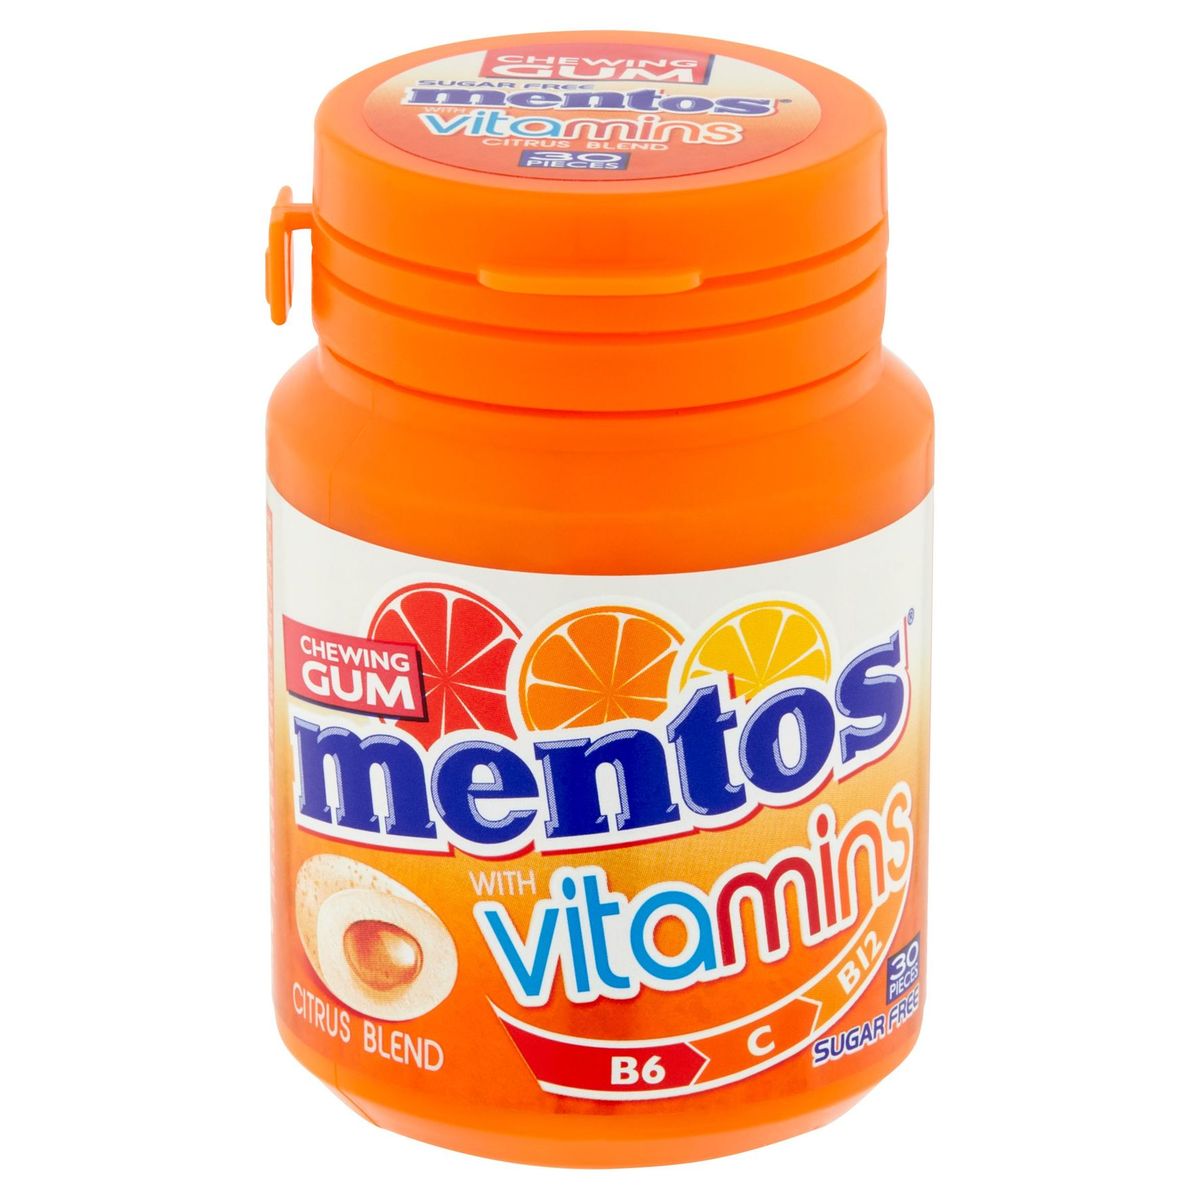 Mentos Chewing Gum with Vitamins Citrus Blend 30 Stuks 60 g